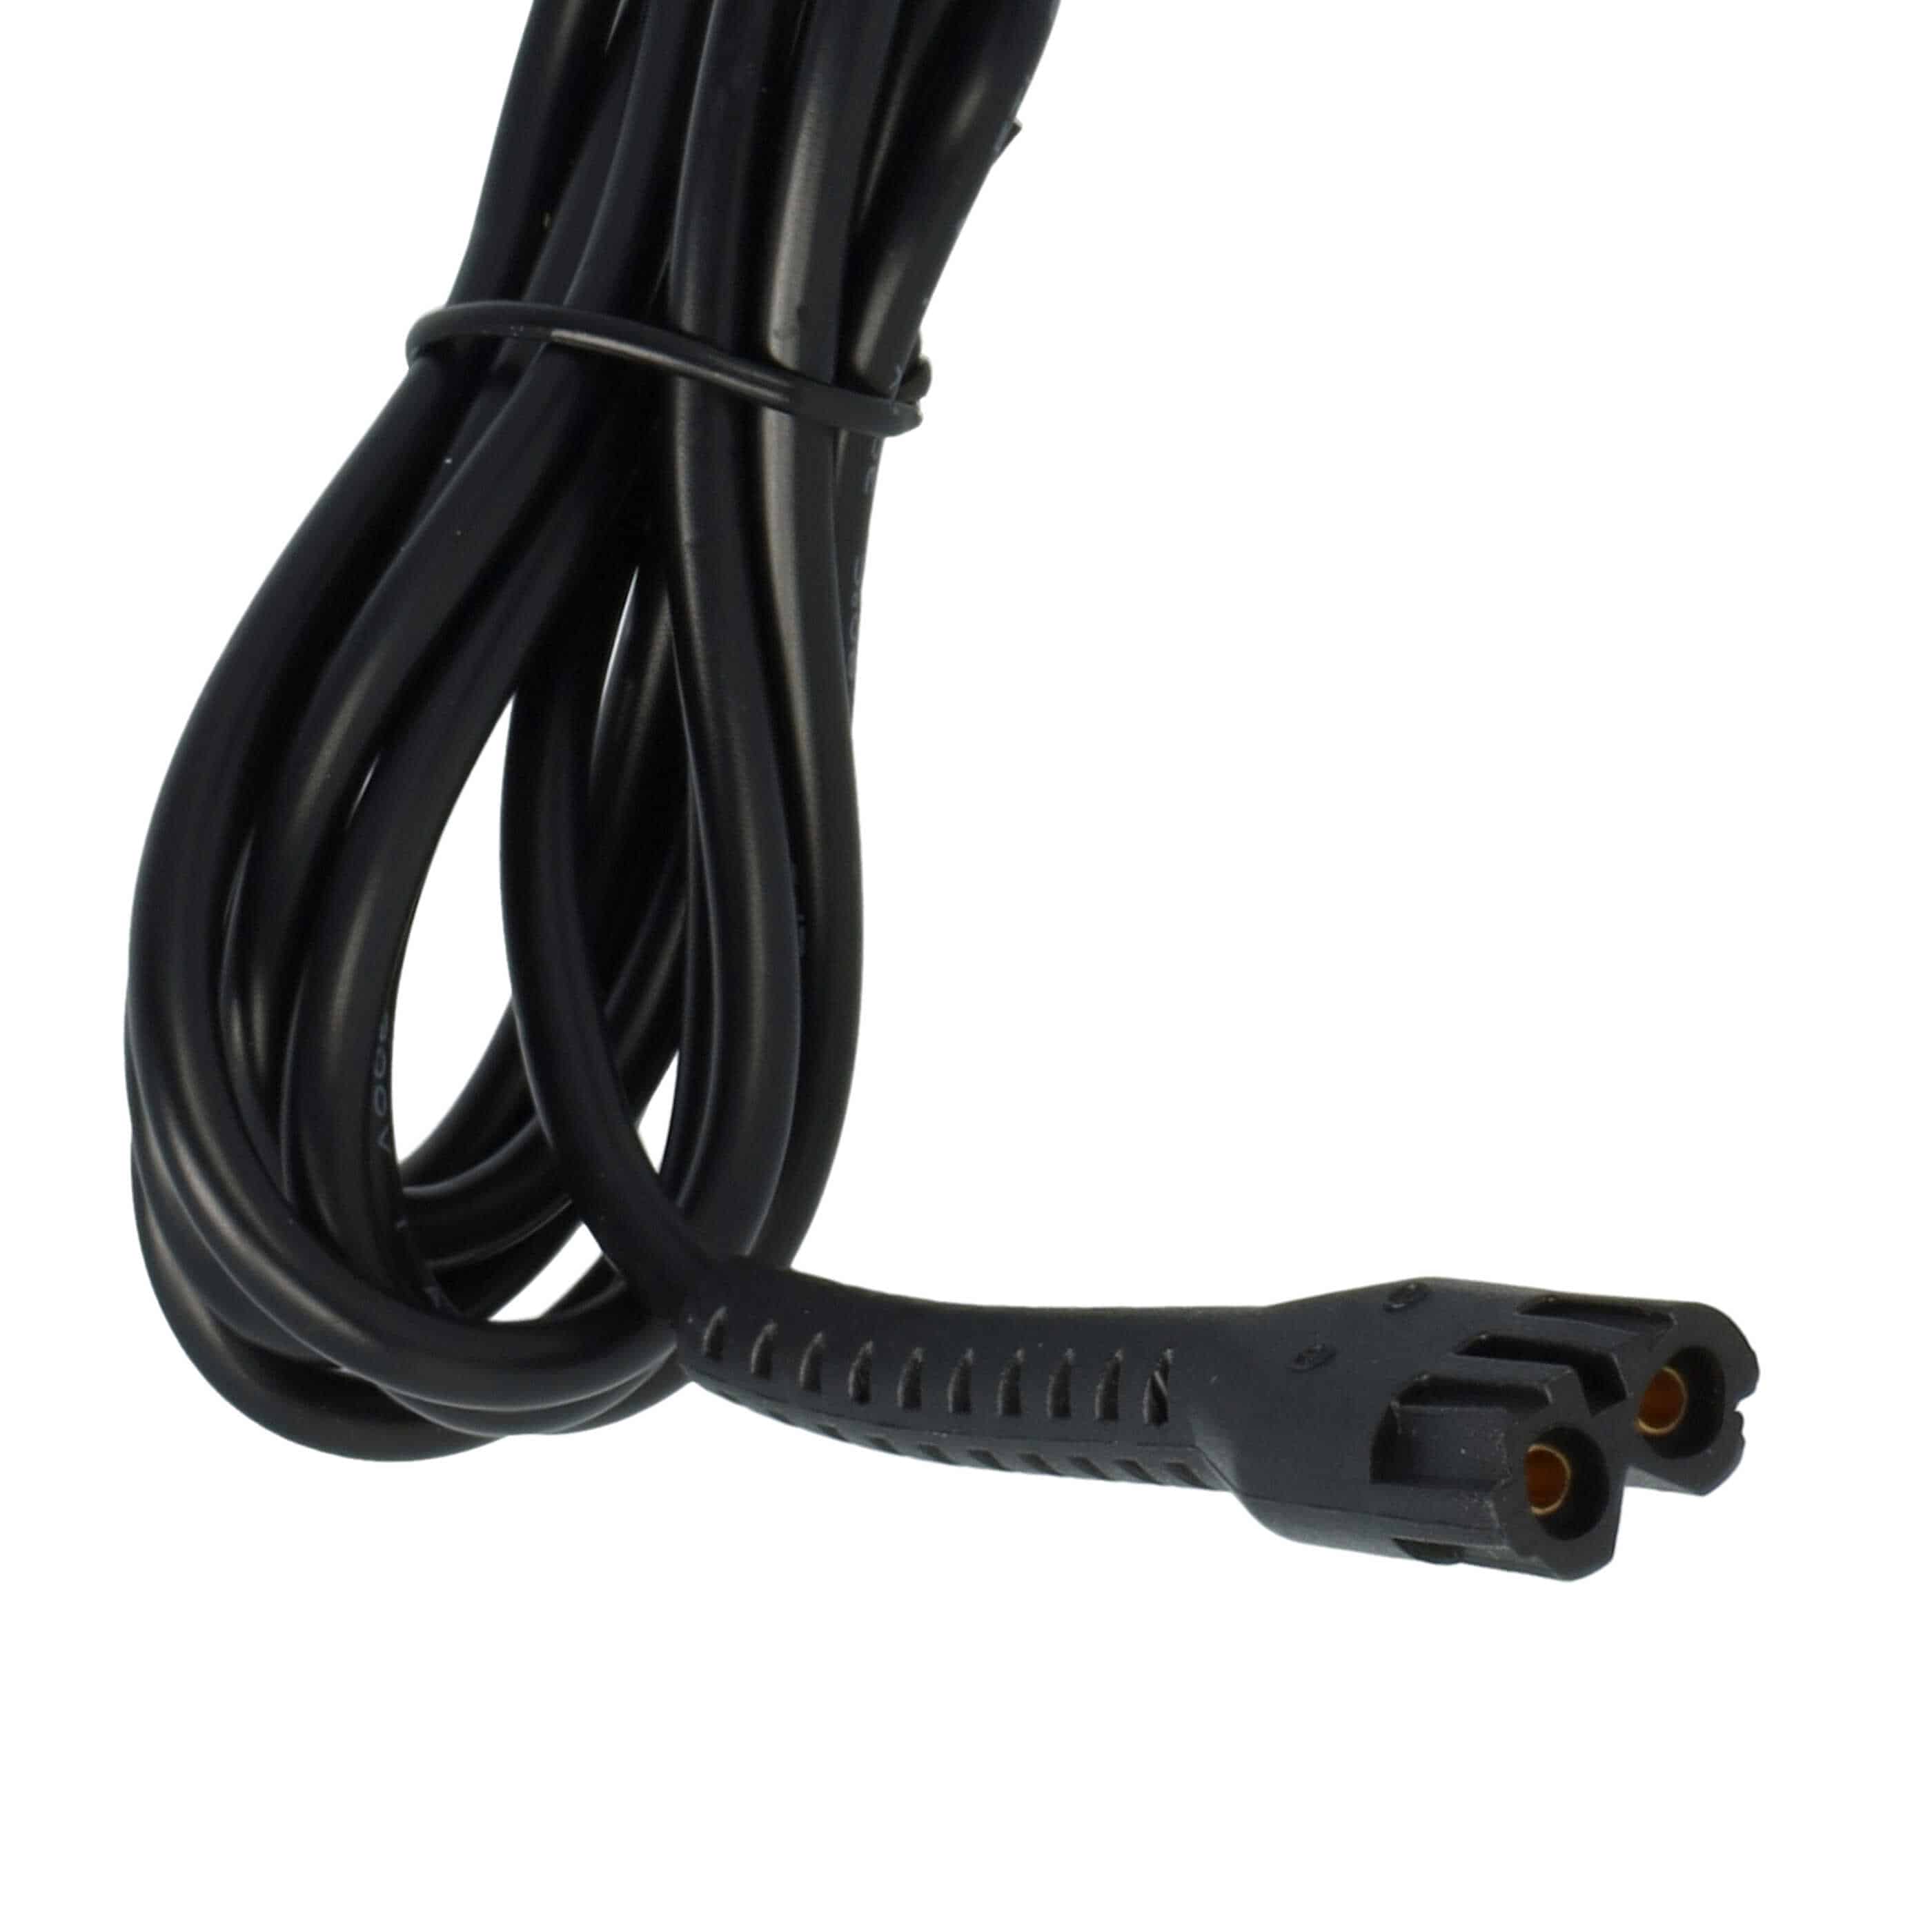 Cable de carga para afeitadoras Wahl Cordless Magic Clip - 170 cm